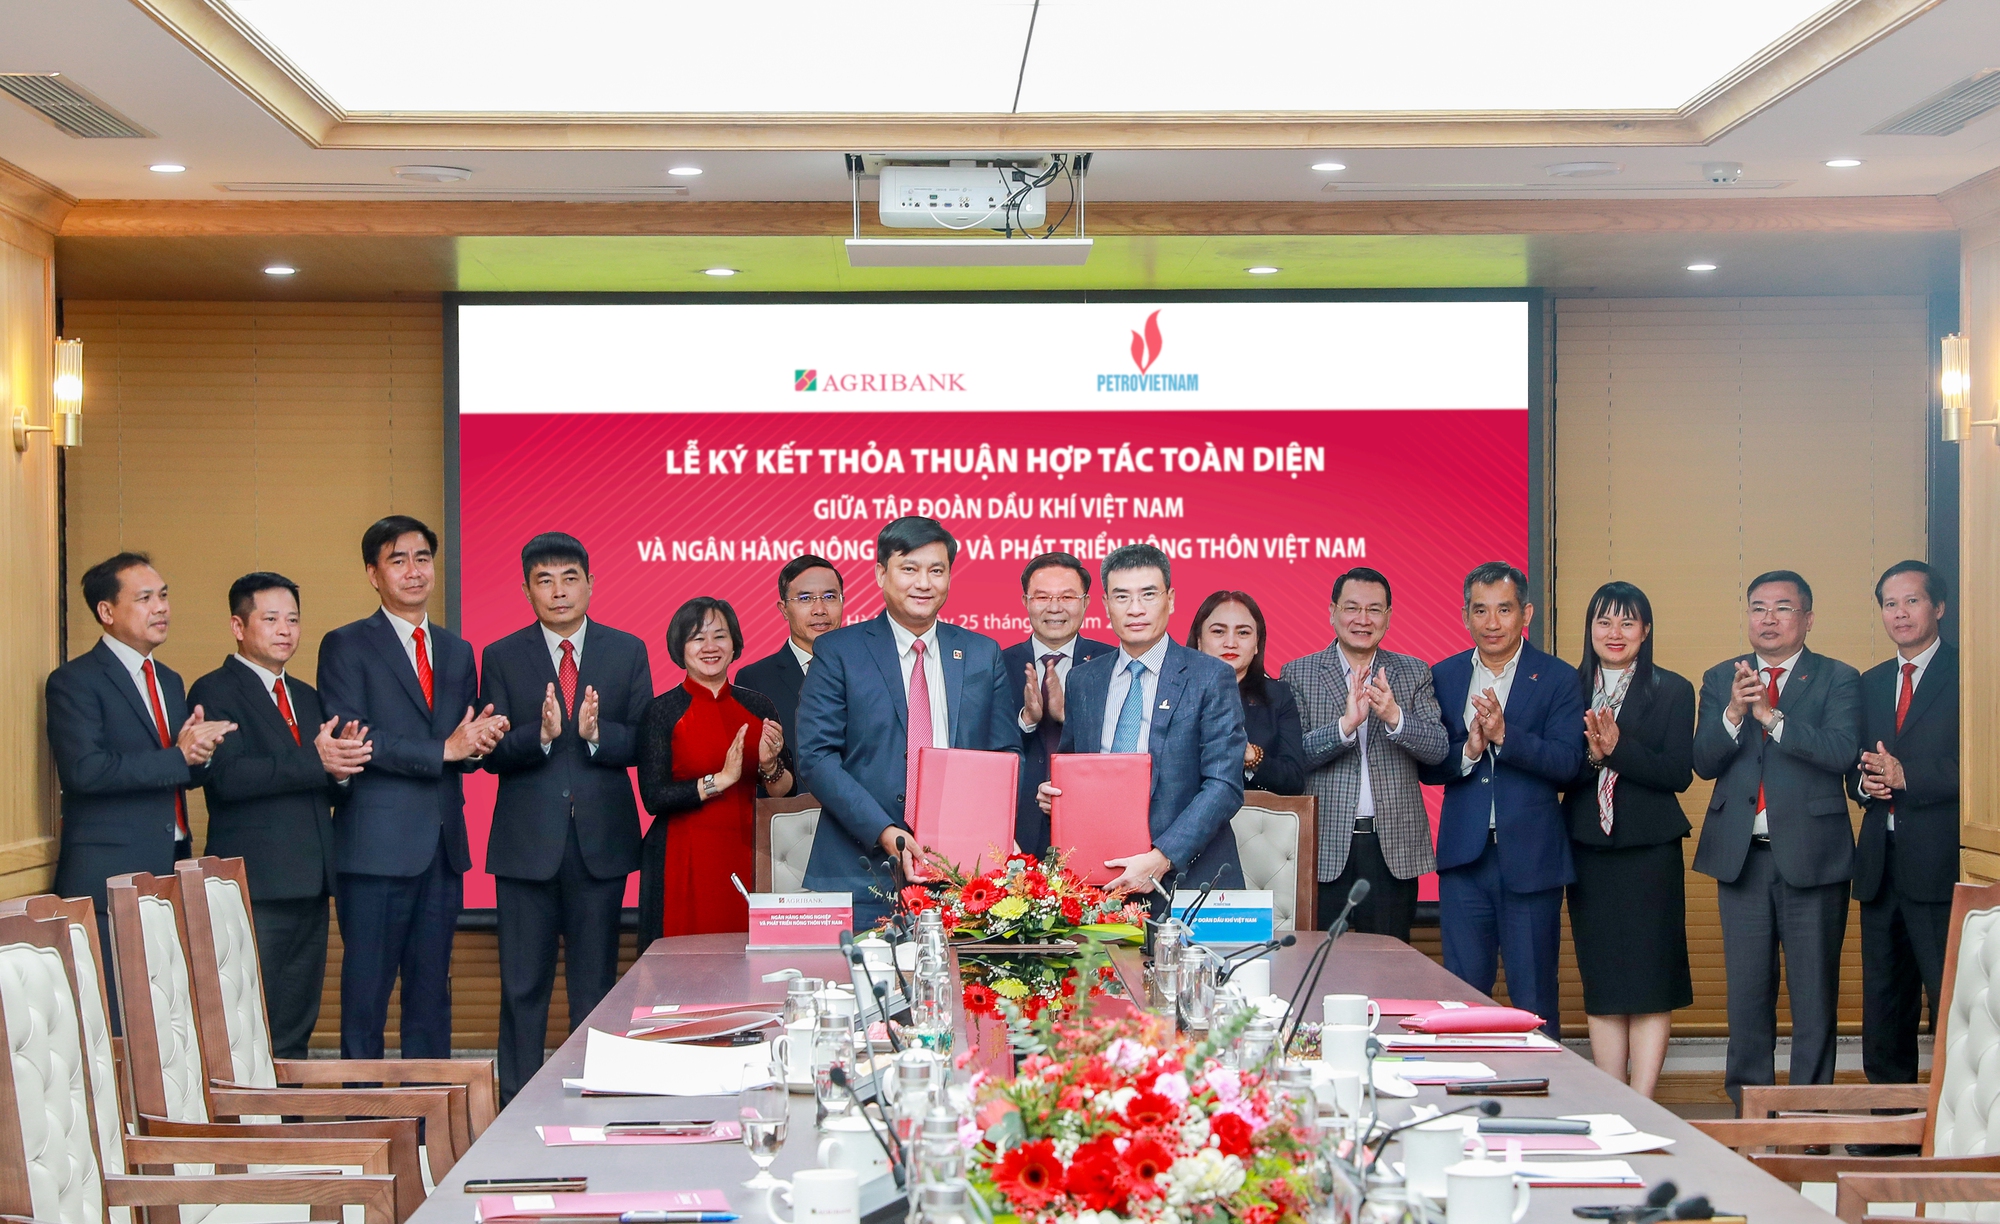 Agribank và Tập đoàn Dầu khí Việt Nam ký kết thỏa thuận hợp tác toàn diện - Ảnh 1.